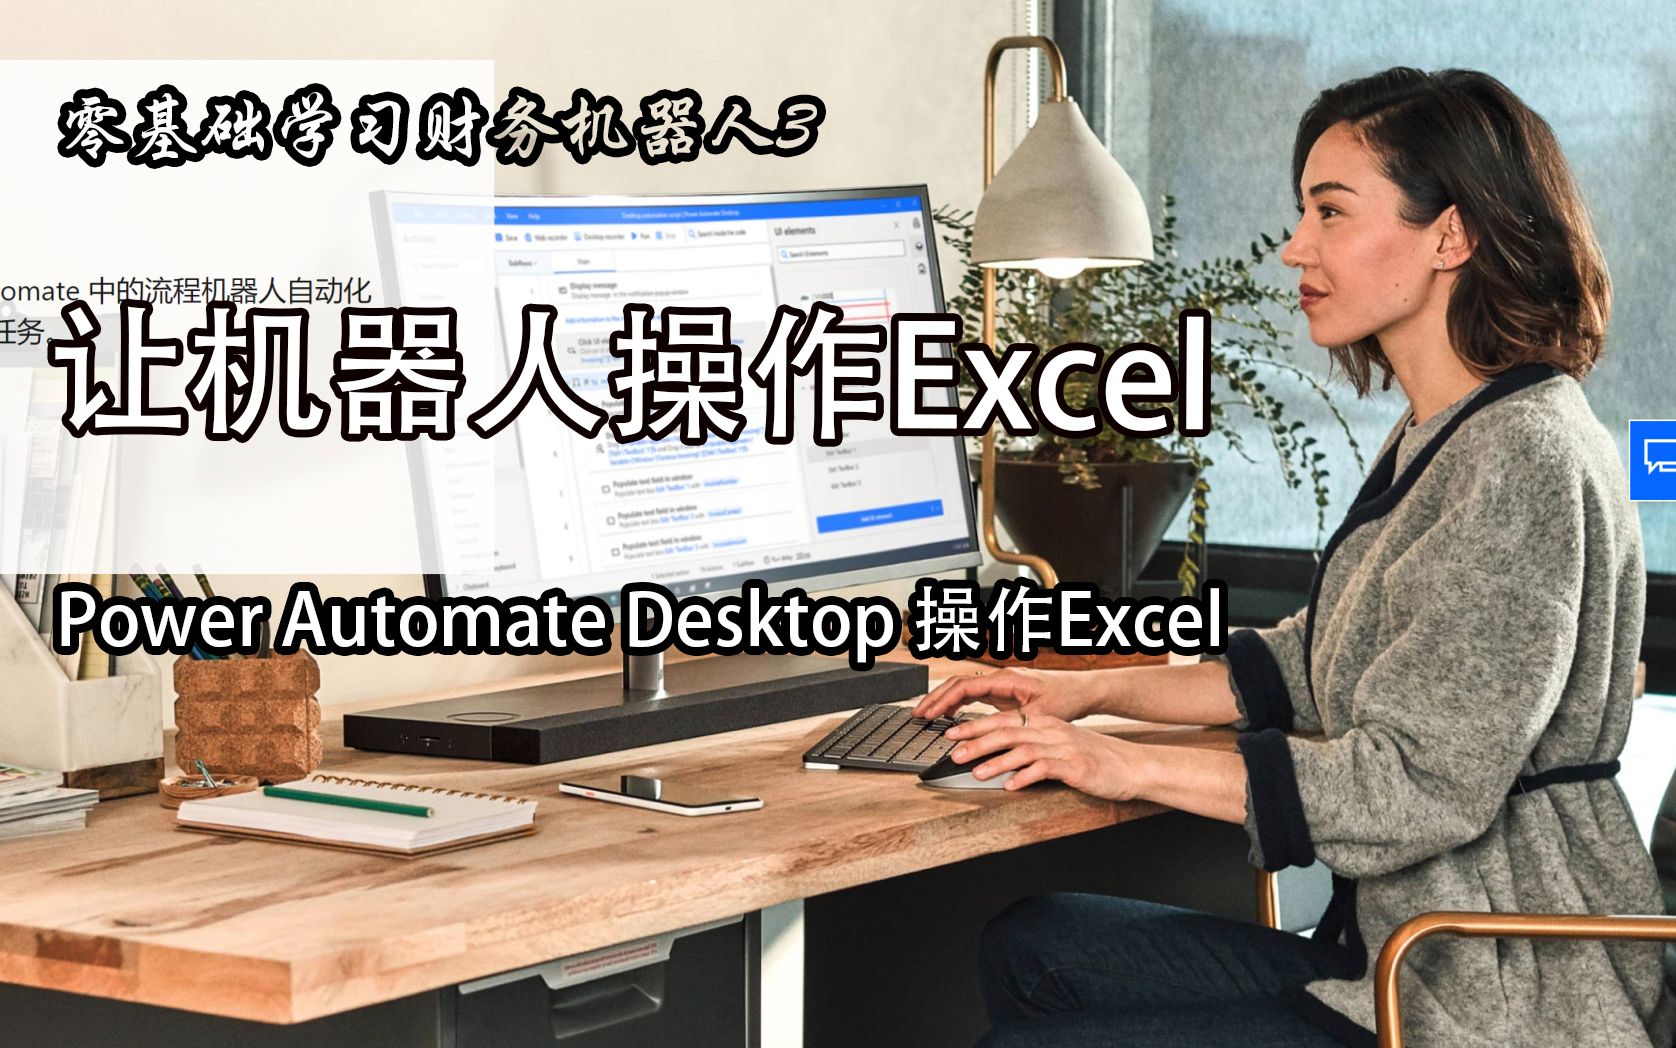 3.用Power Automate操作Excel